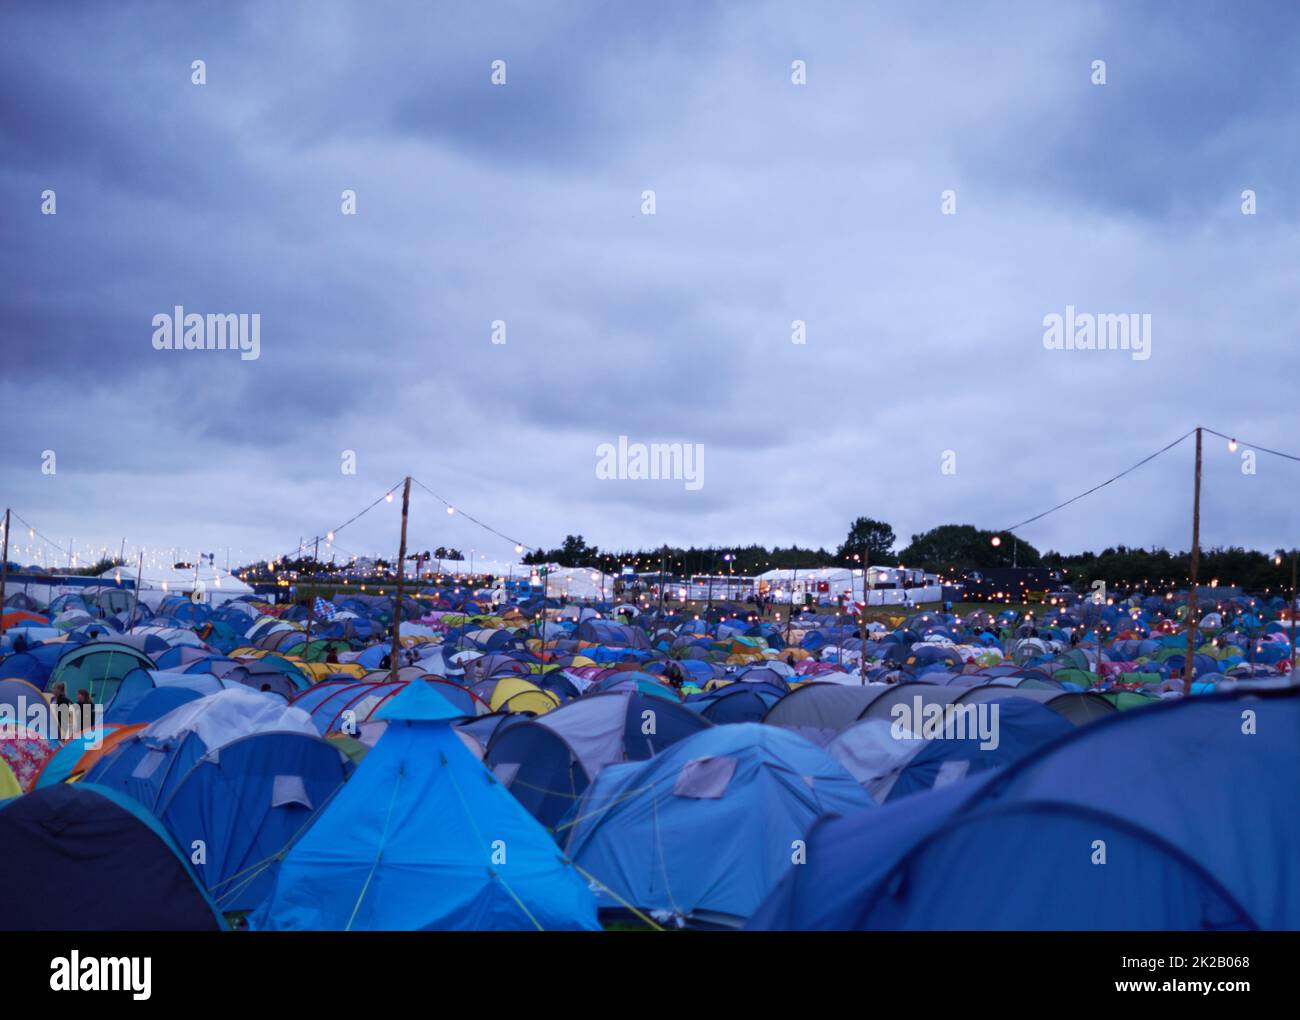 Ce festival va être intentif. Prise de vue de différentes tentes lors d'un festival en plein air. Banque D'Images